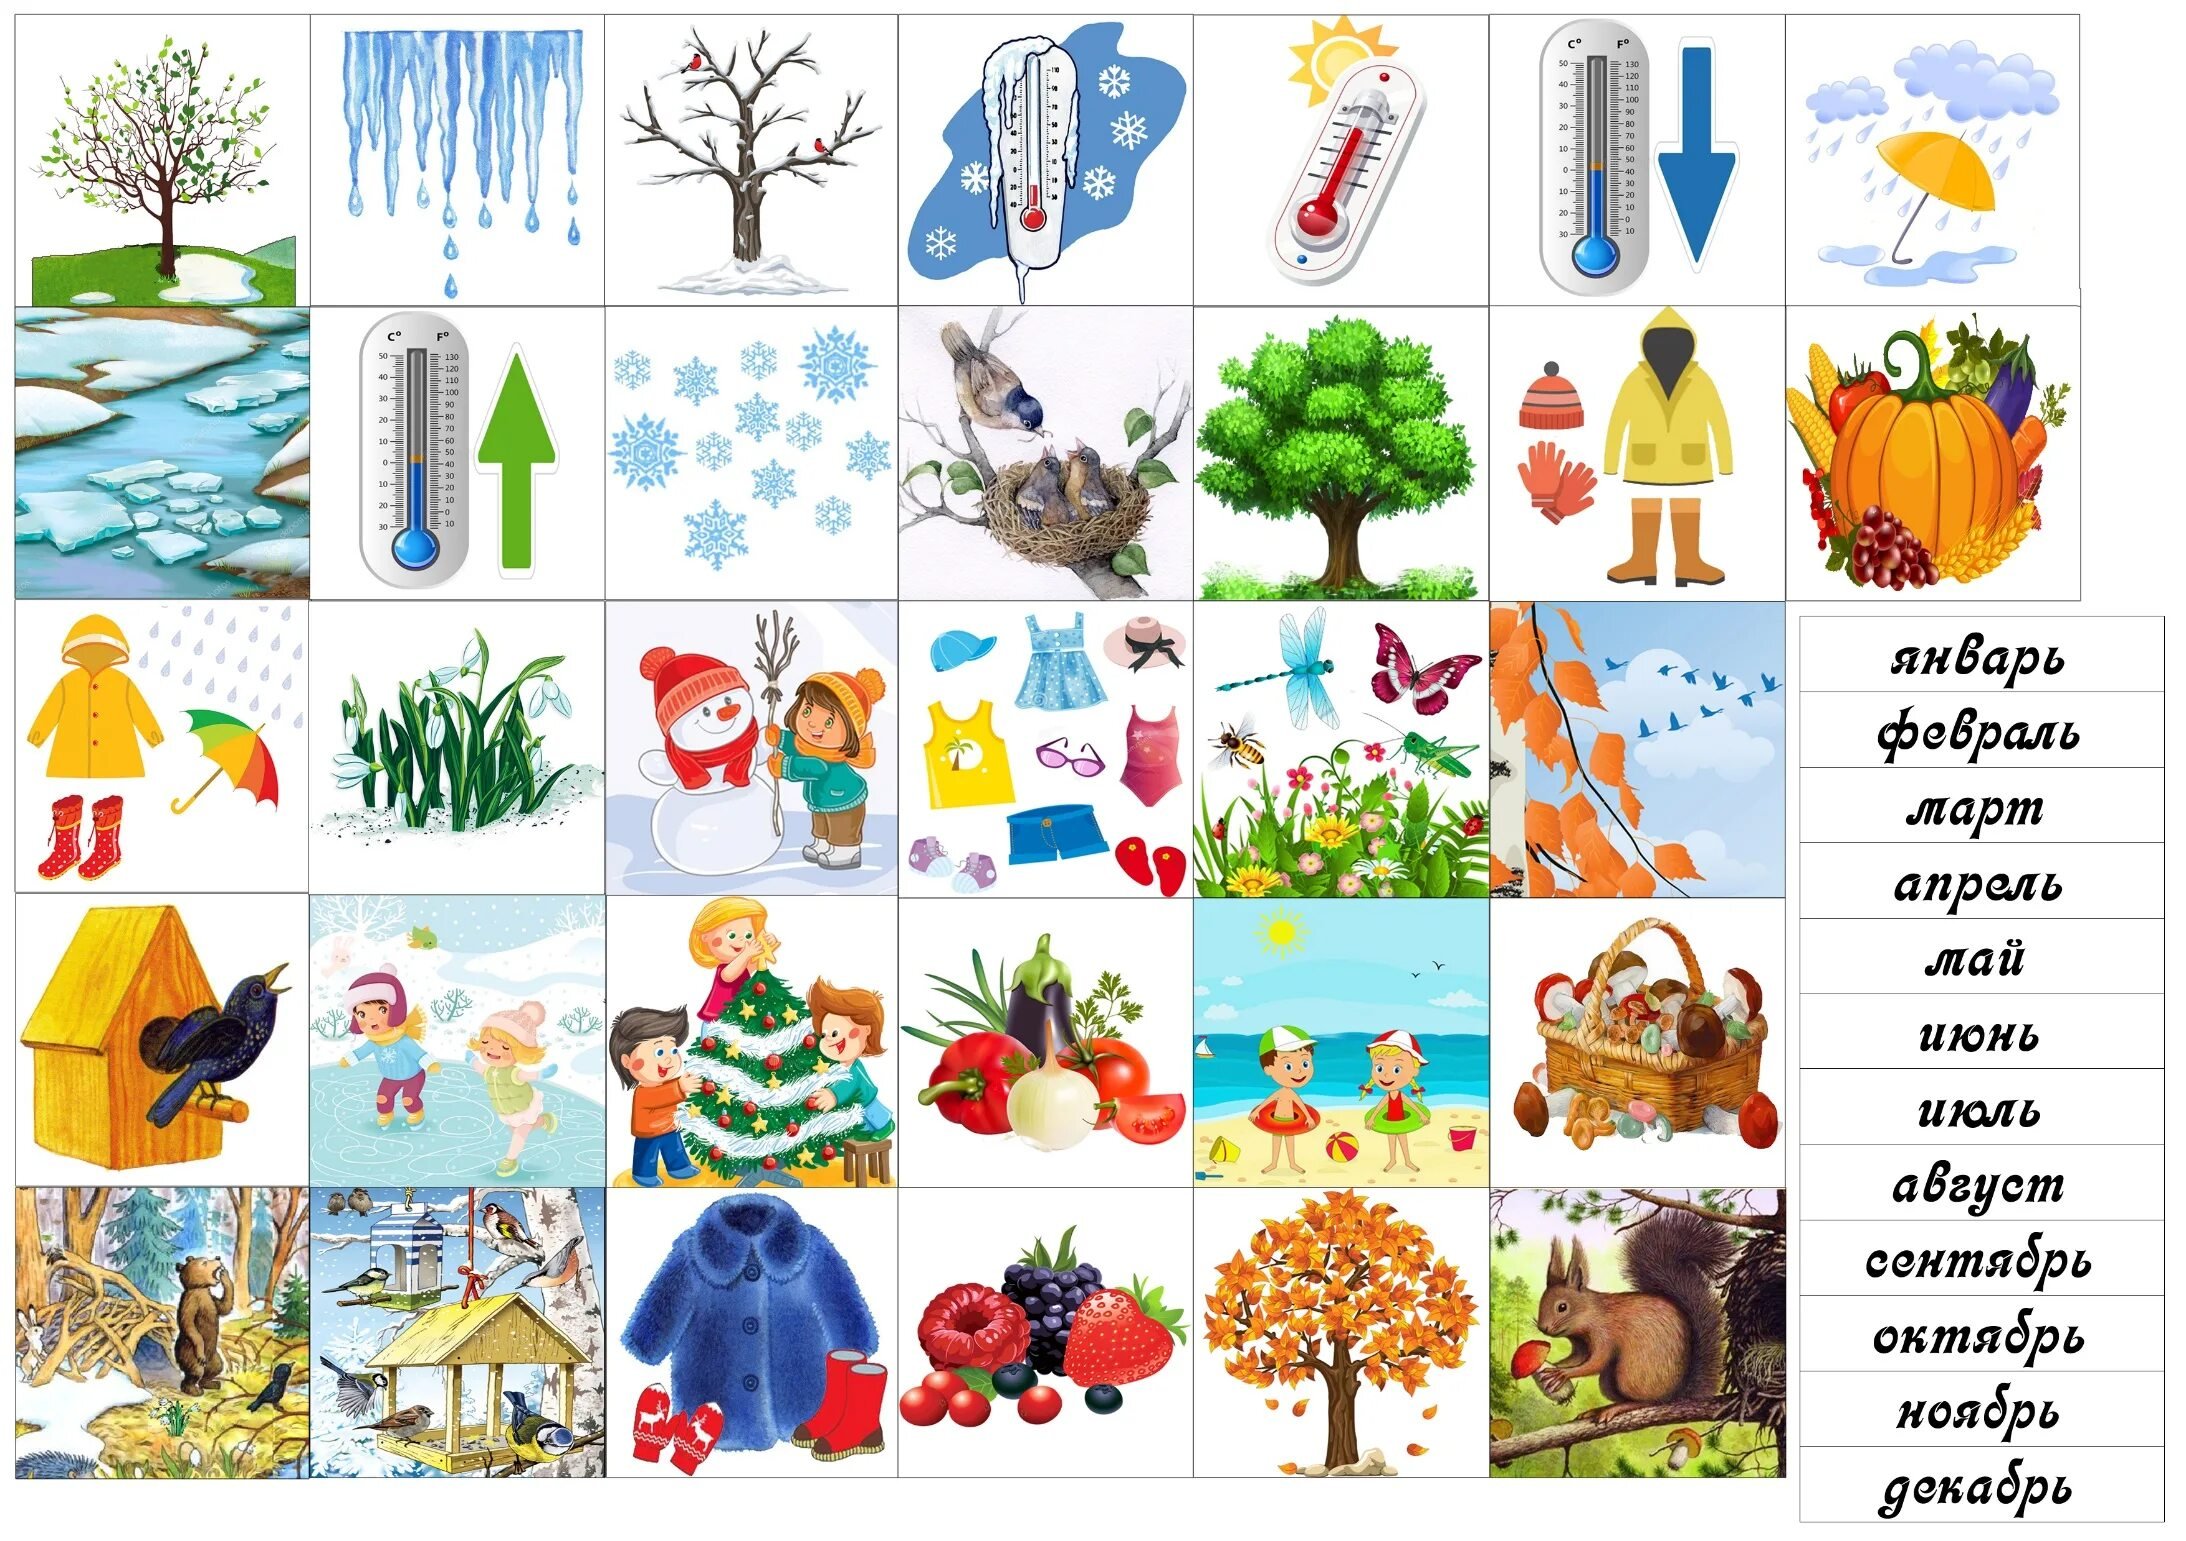 Бесплатная игра времена года. Предметы времен года. Карточки по временам года. Признаки времен года для детей. Изображения времен года для детей.